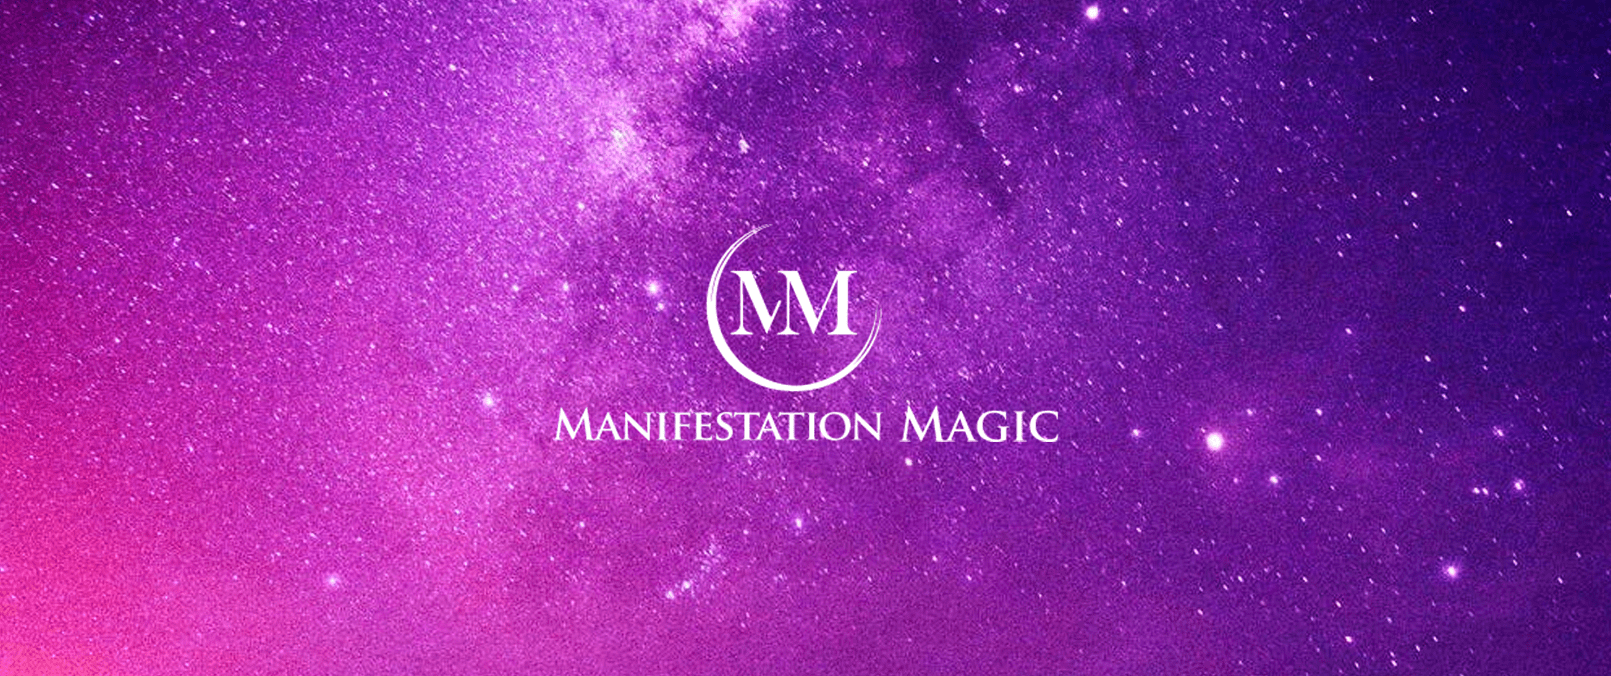 manifestation magic reviews